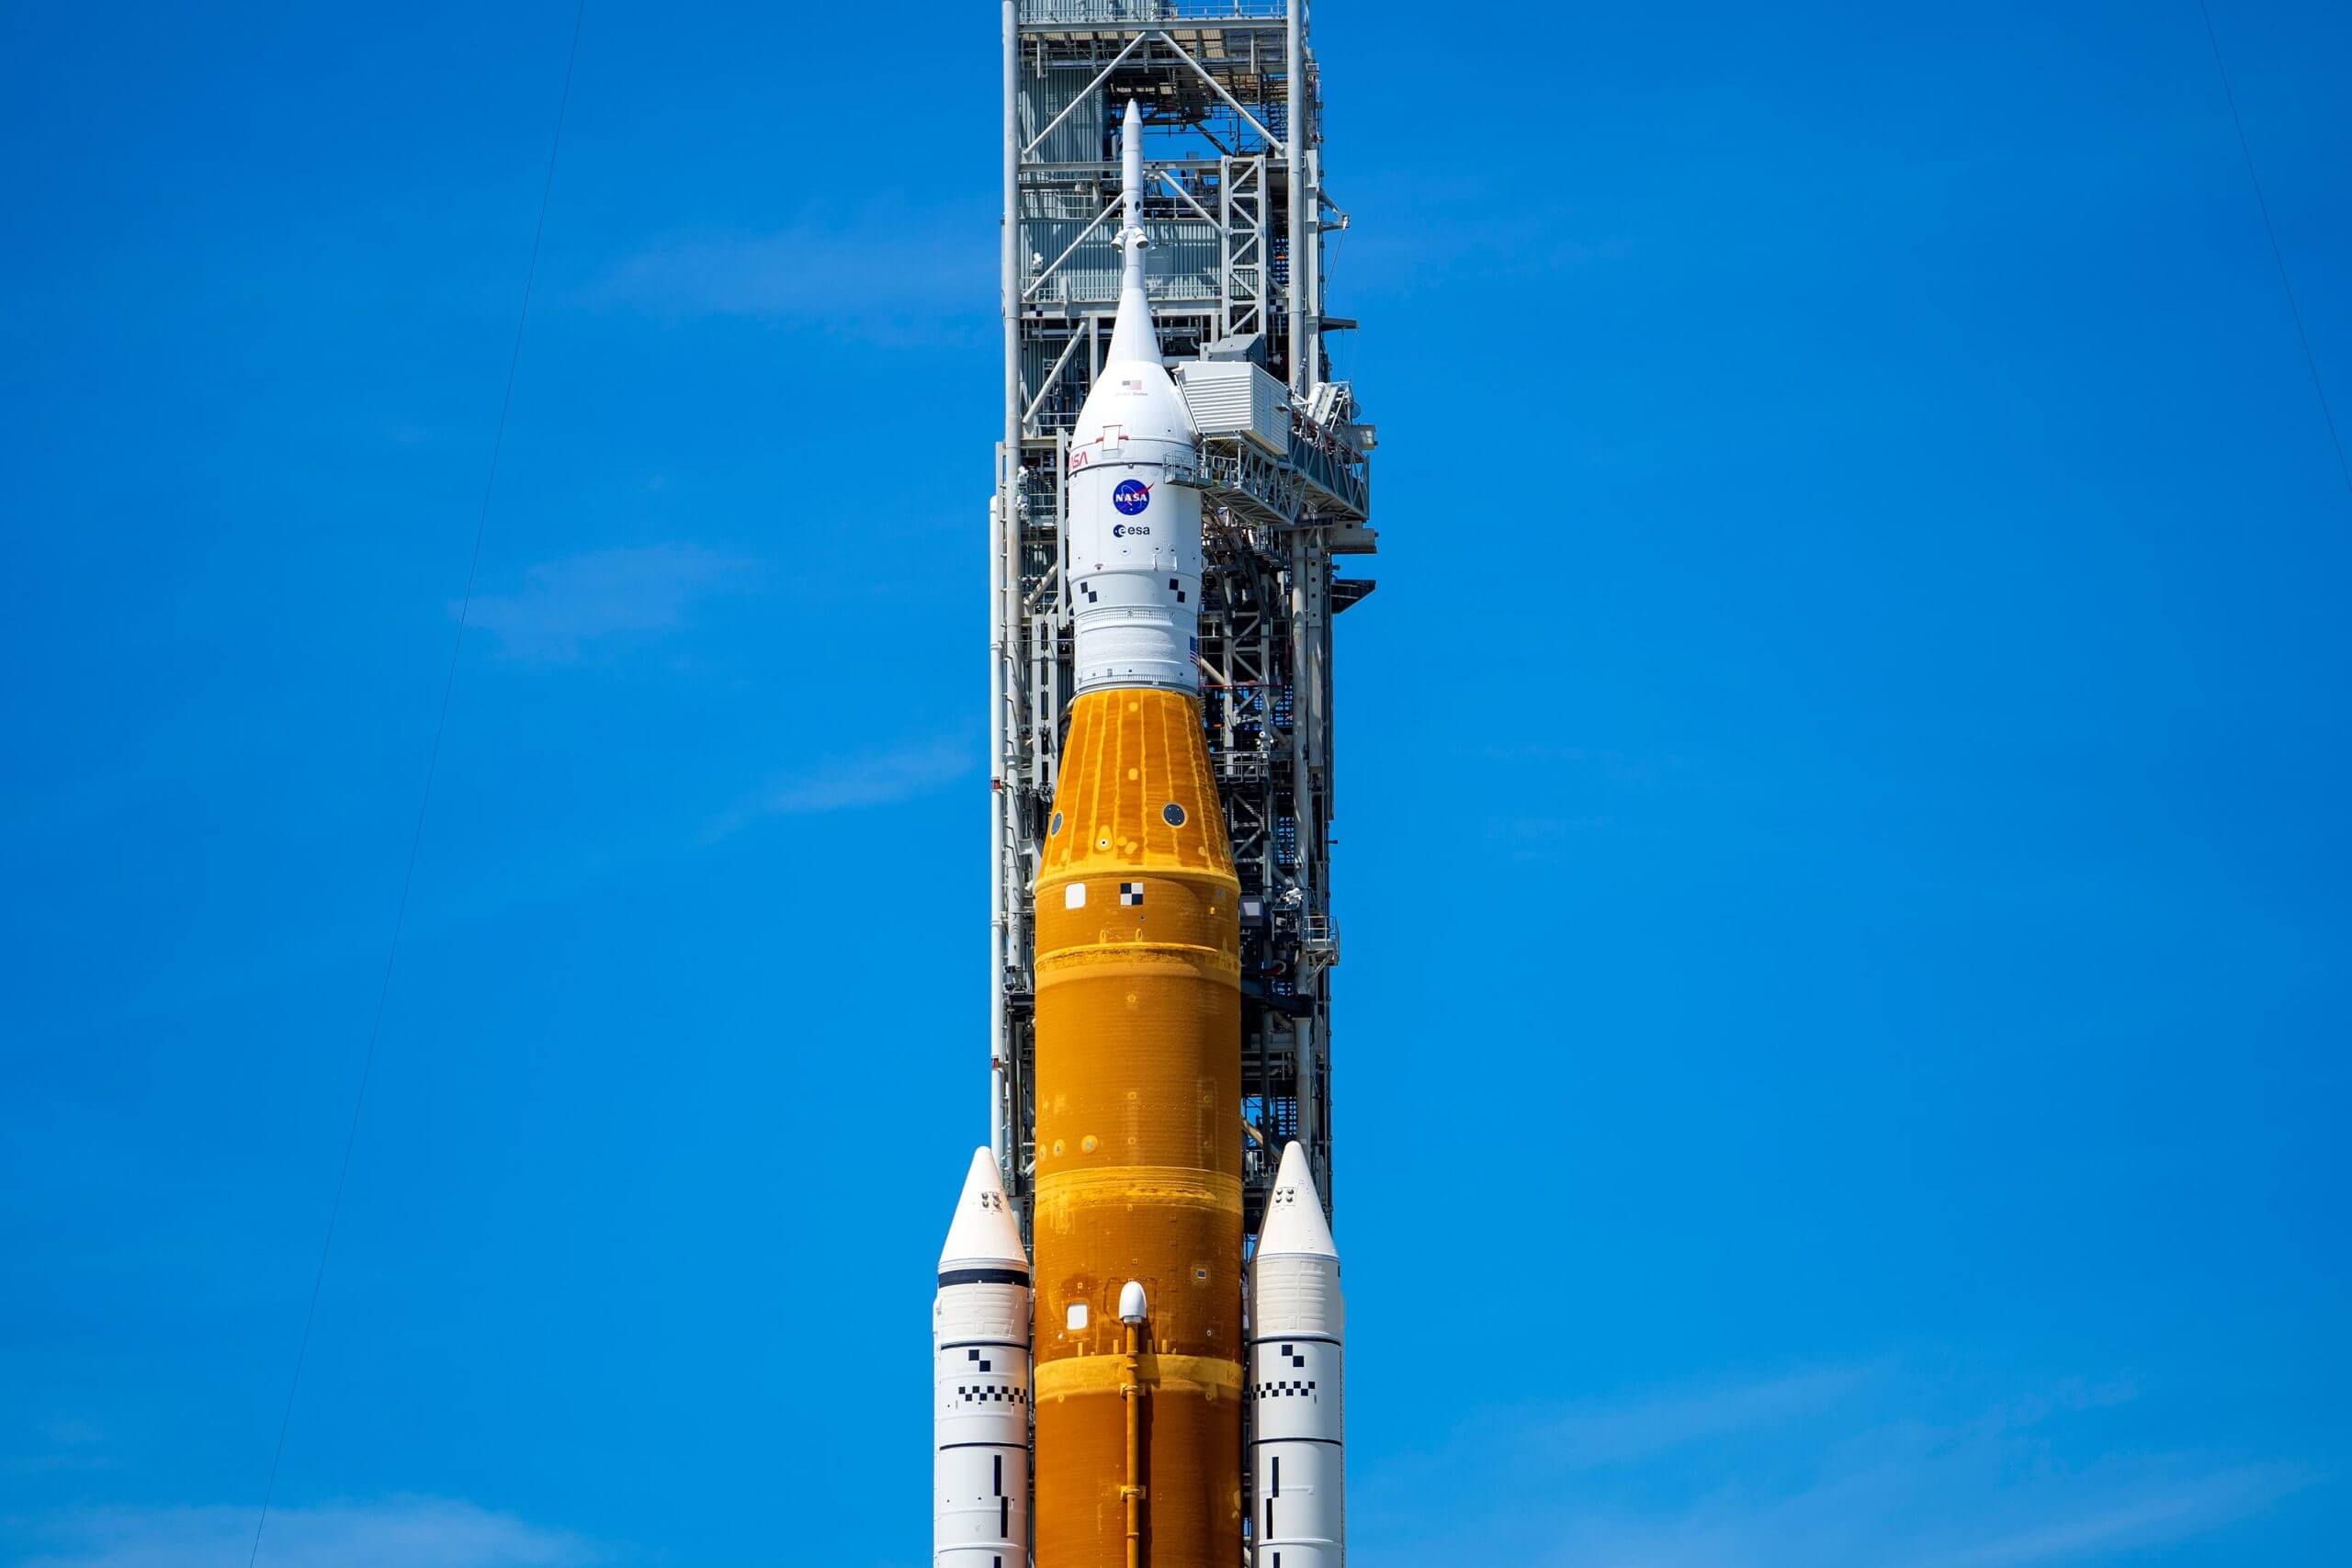 הטיל SLS (מערכת השיגור לחלל) עם החללית אוריון עליו בכן השיגור B39 במרכז החלל קנדי של נאס"א לפני שהוחזרה להאנגר הבדיקות. קרדיט: NASA/Sam Lott